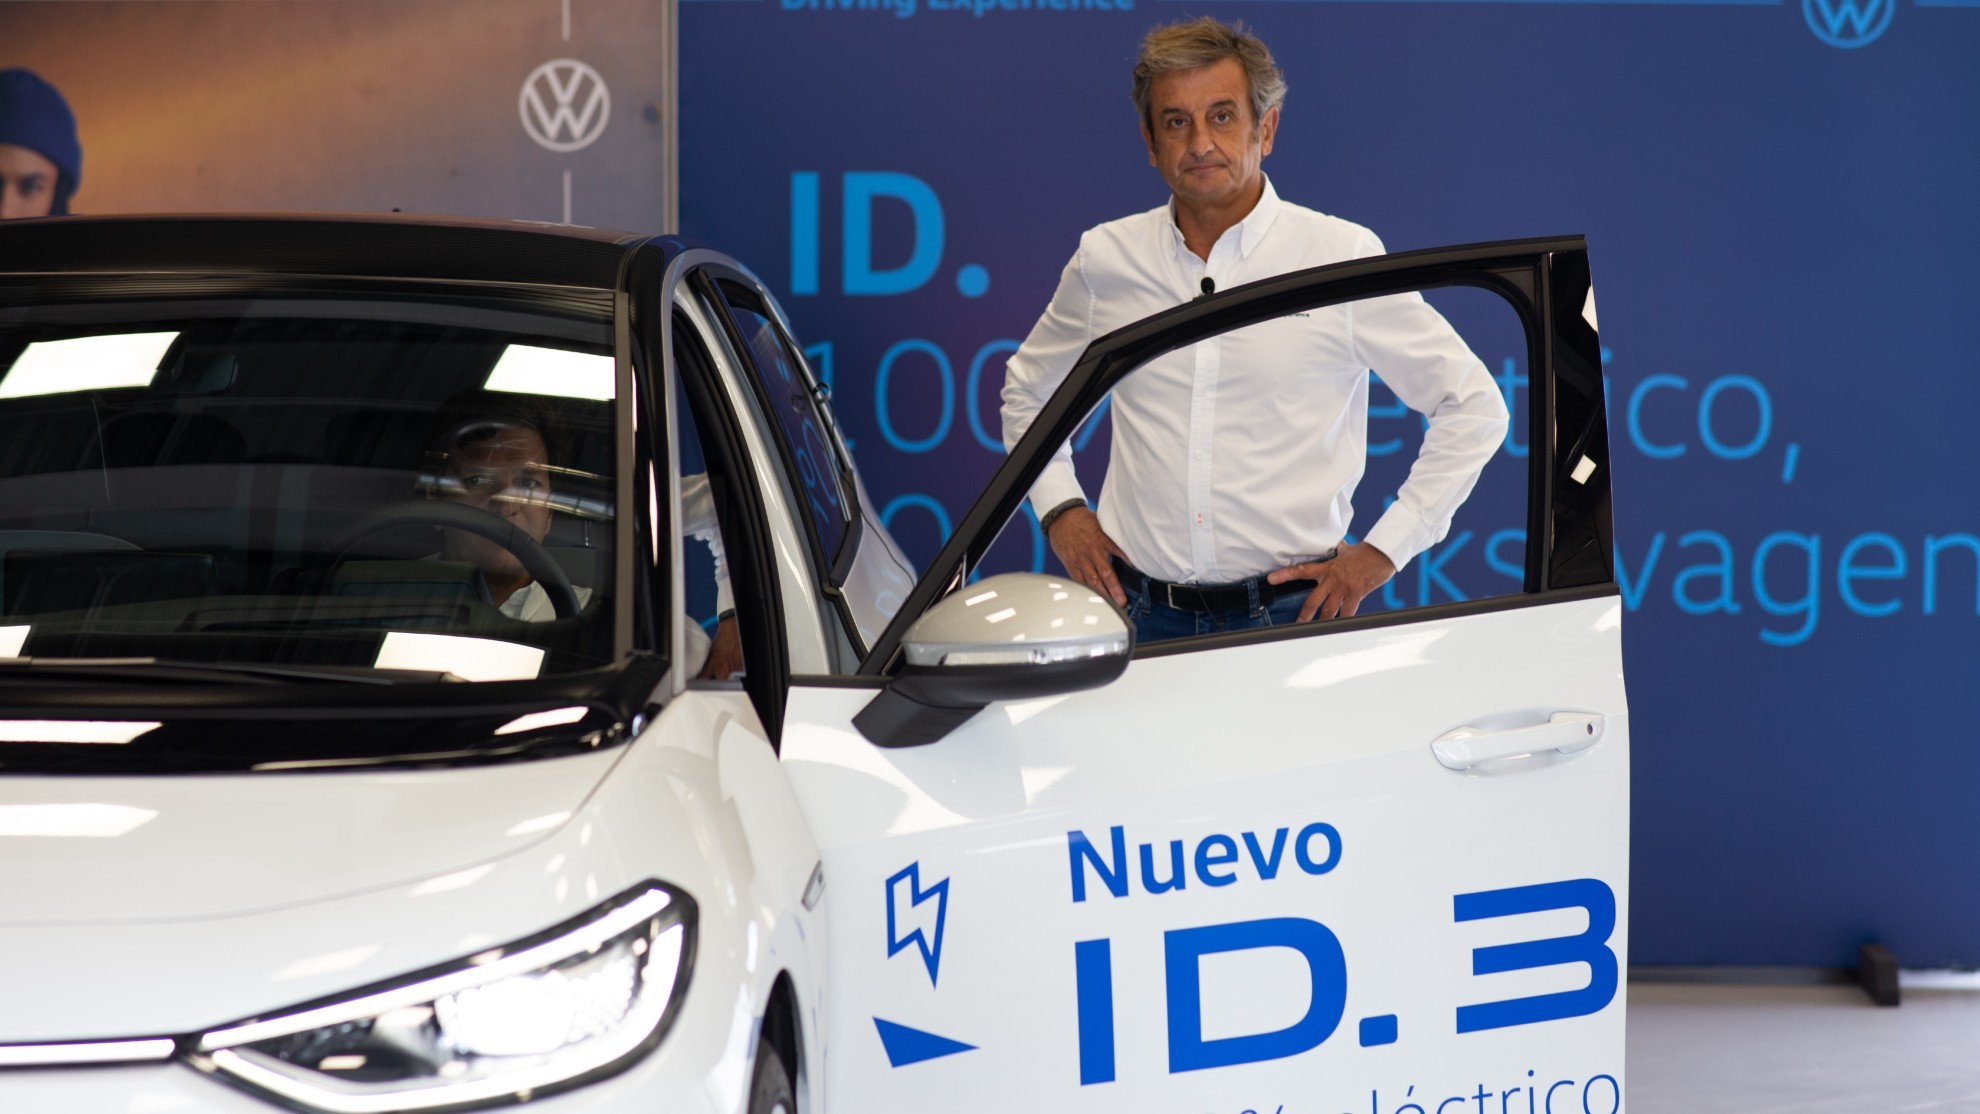 Luis Moya - Volkswagen Driving Experience - escuela de conduccion Volskwagen - consejos - coches electricos